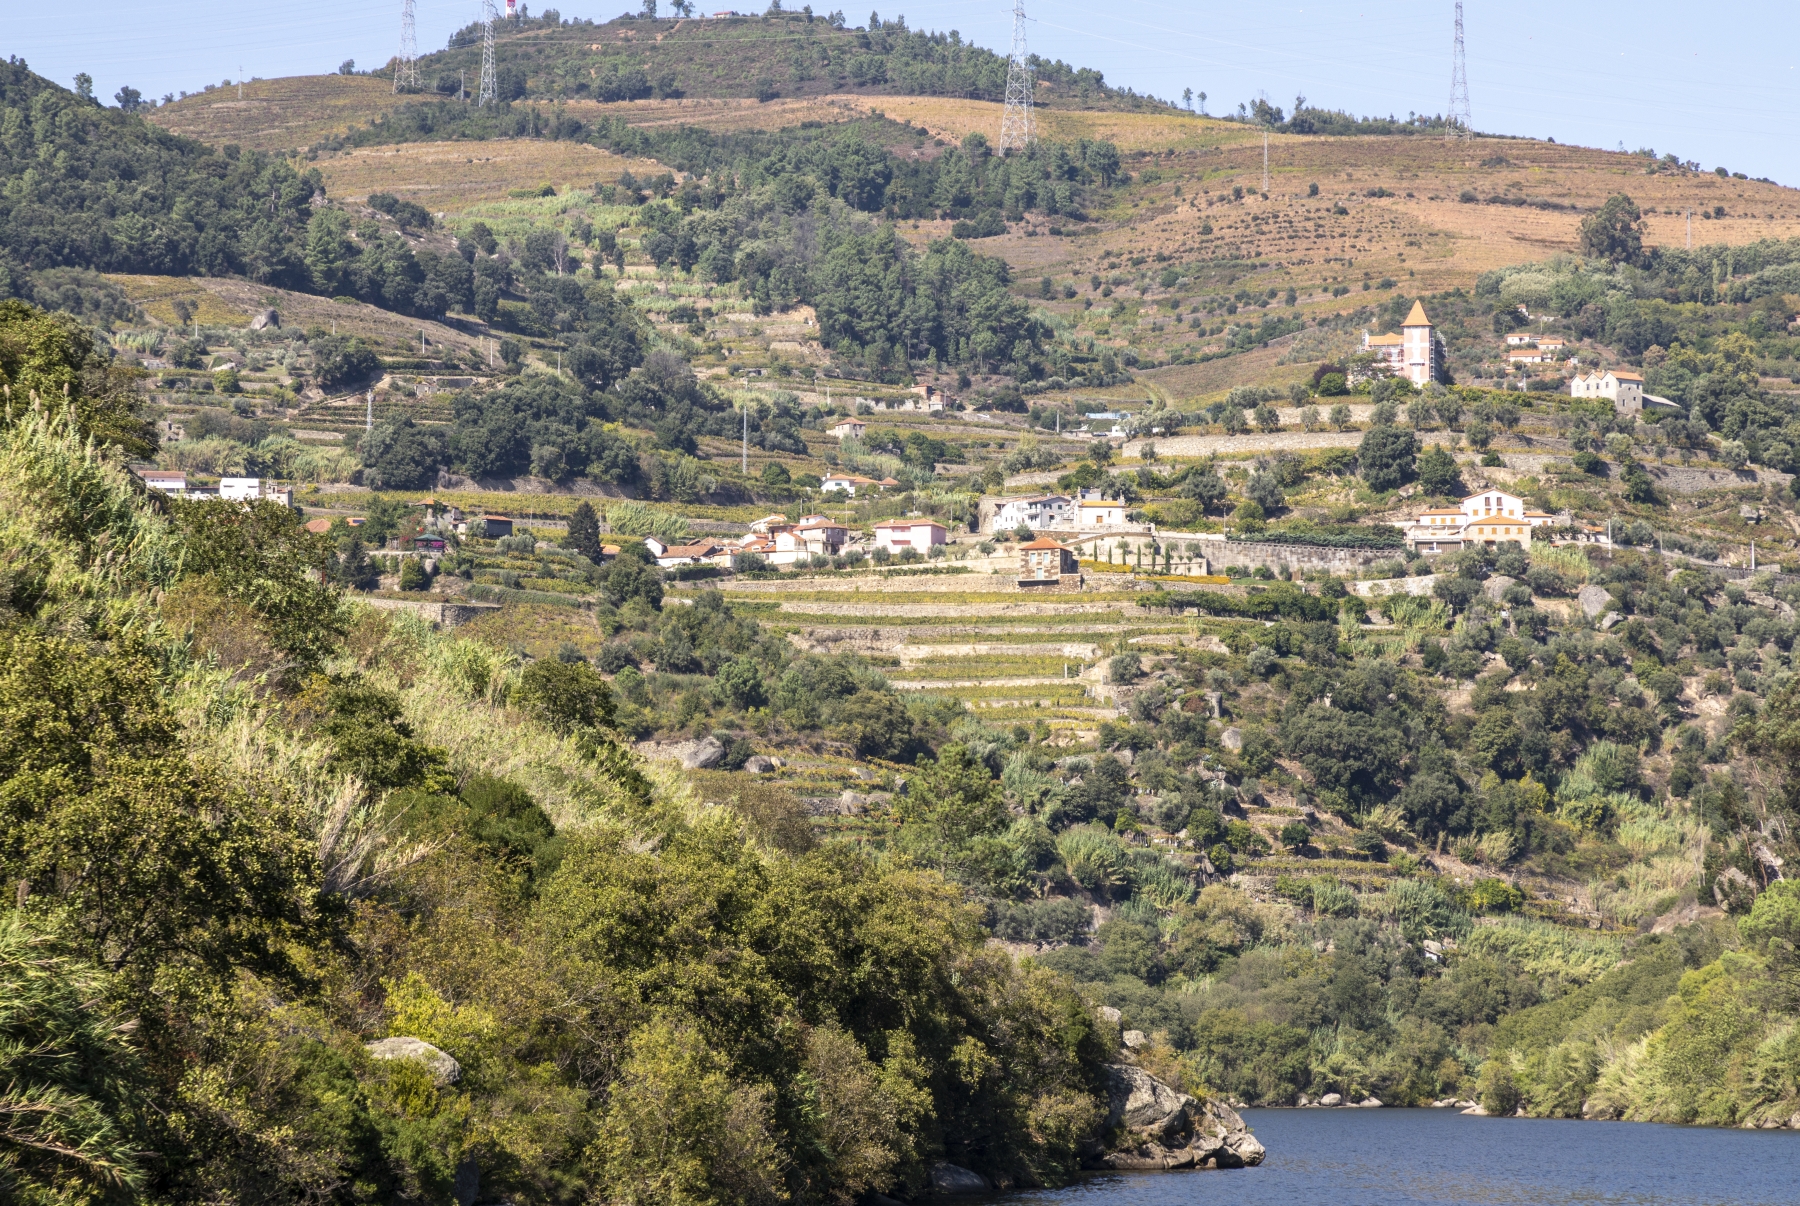 Douro River Cruise Portugal 2023